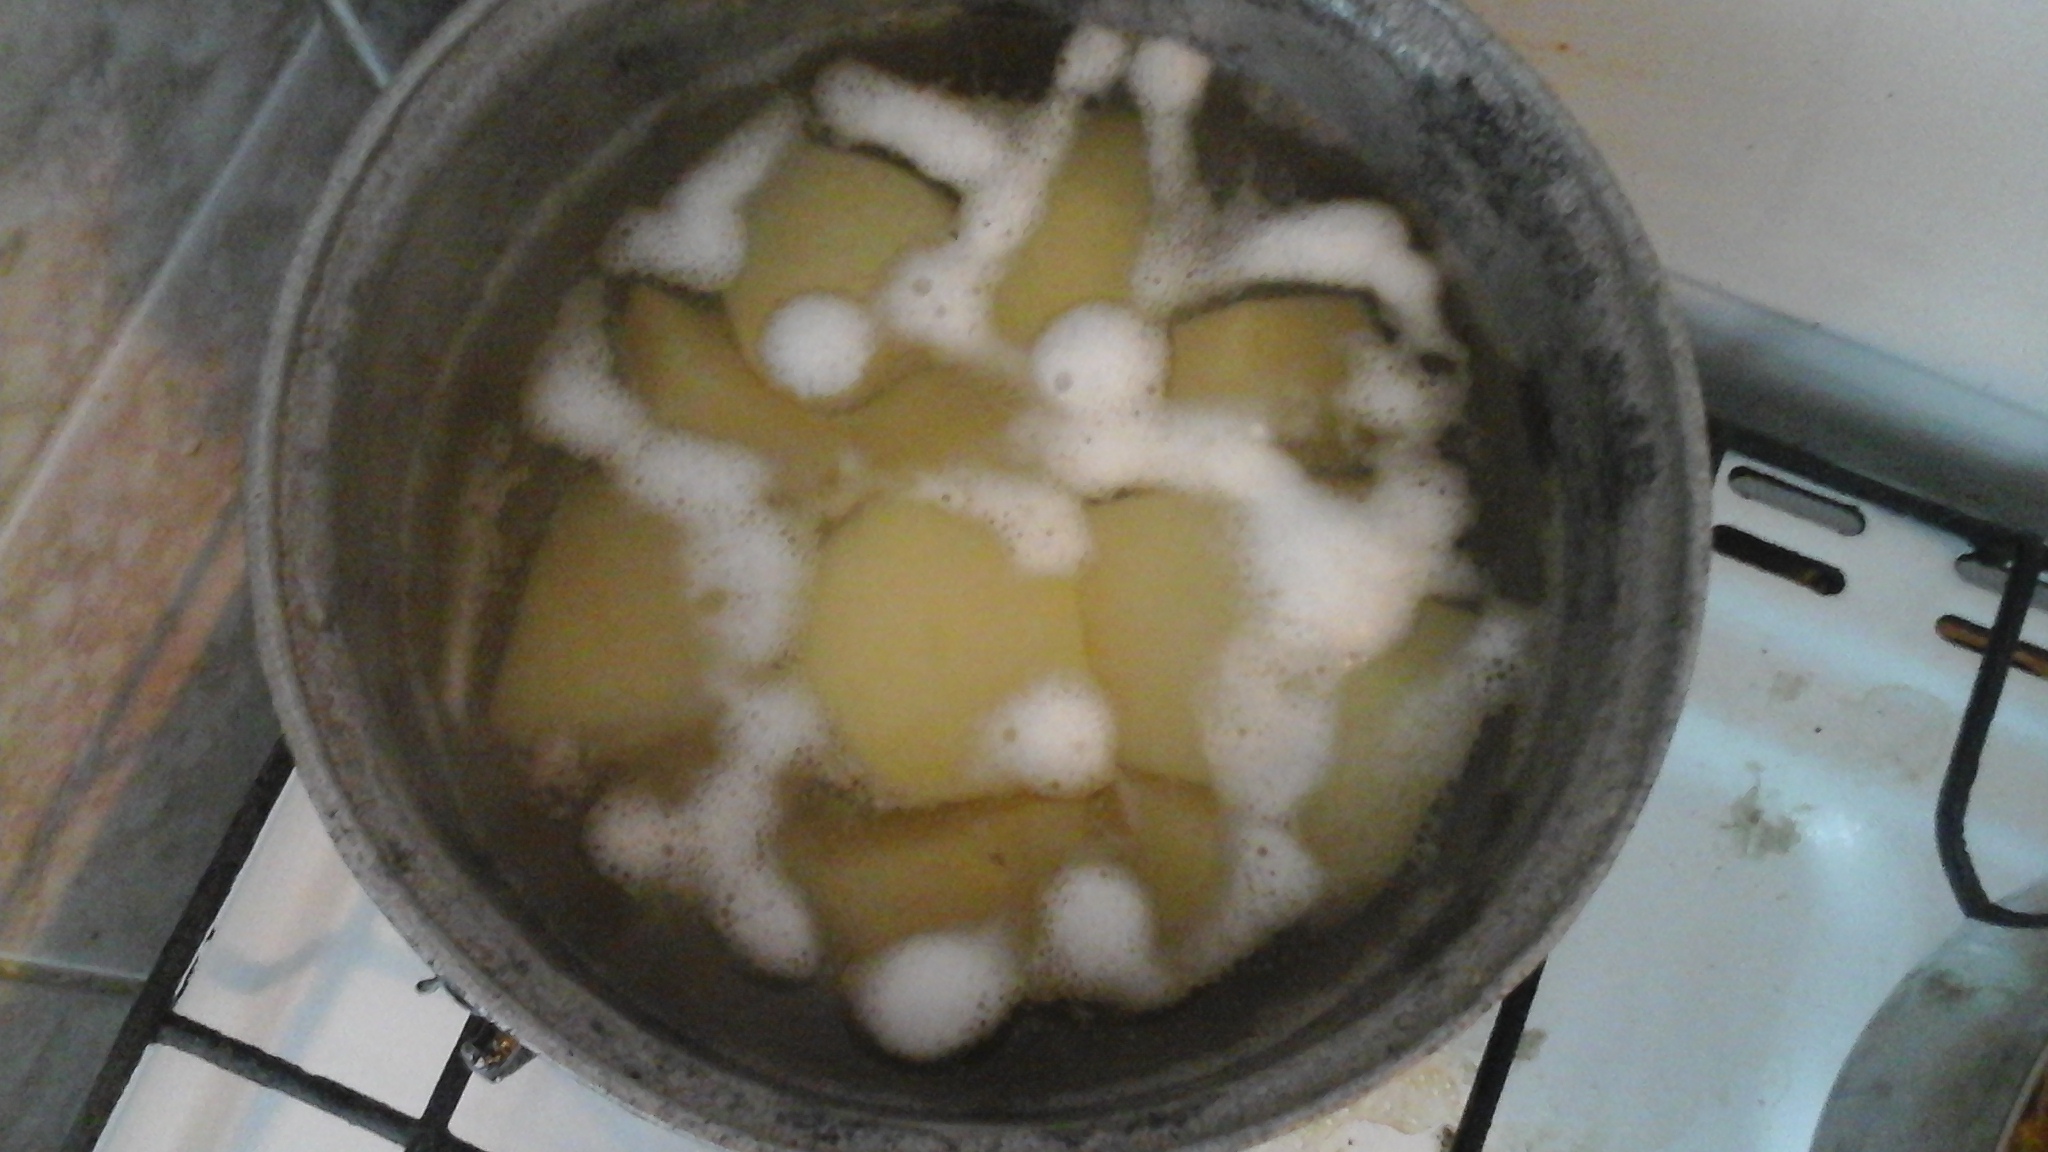 Ficăței de pasăre in sos de bulion cu piure de cartofi